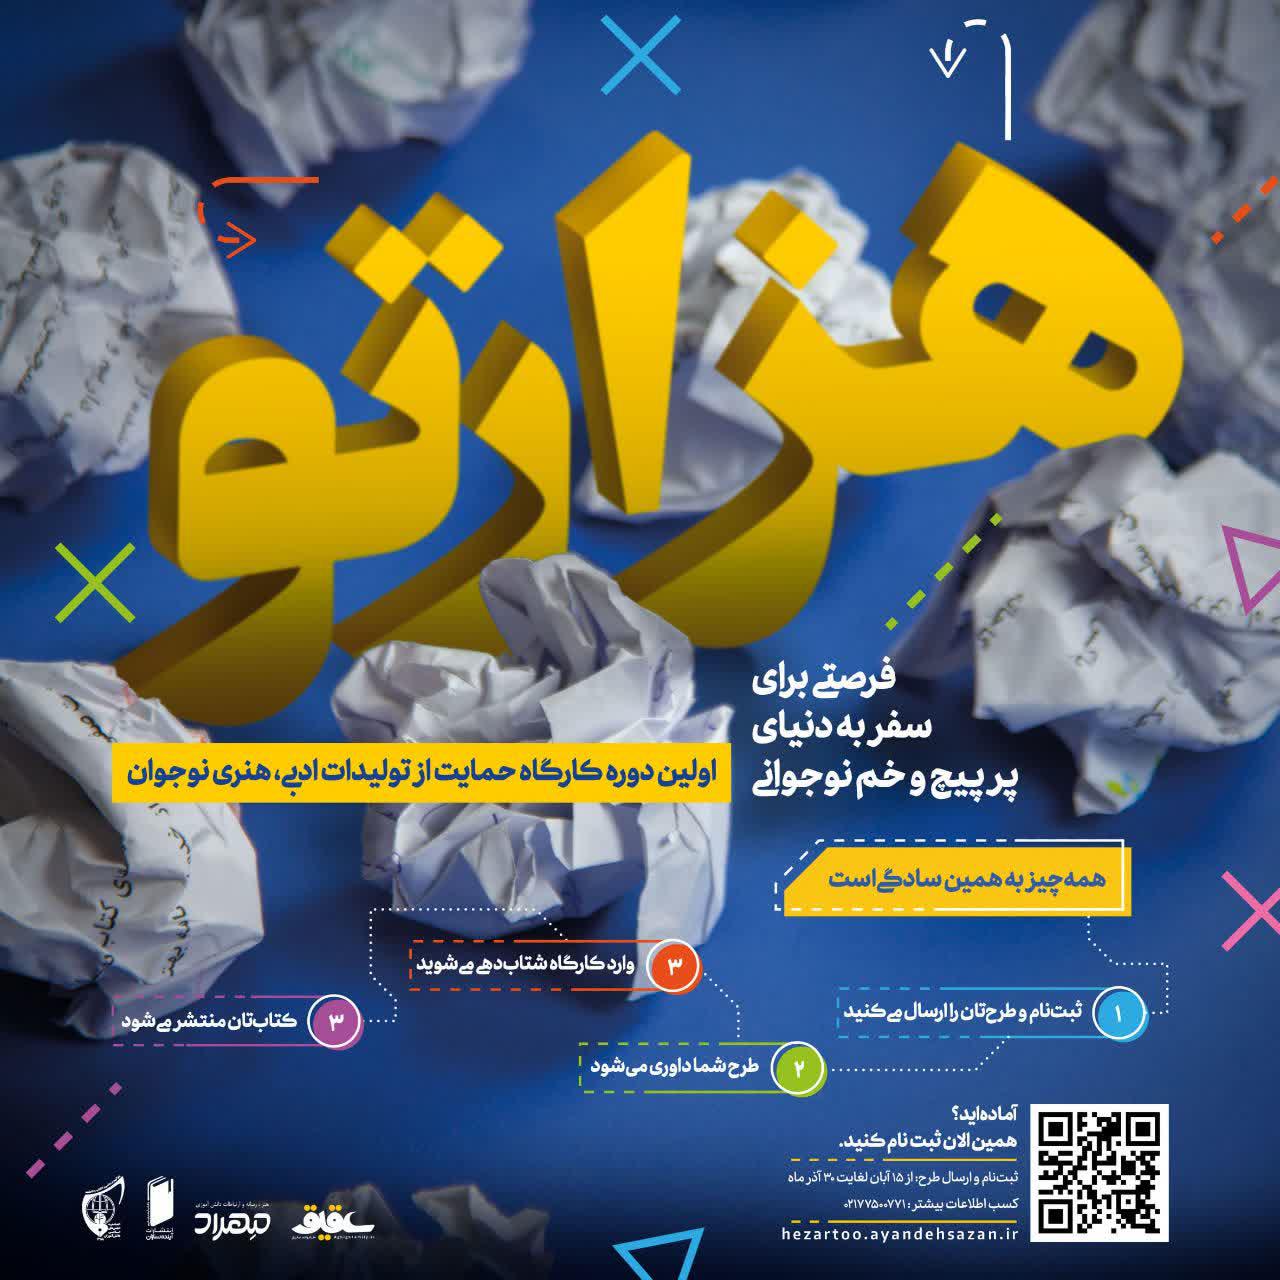 تمدید فراخوان حمایت از تولیدات ادبی نوجوان «هزارتو» تا پایان آذر  